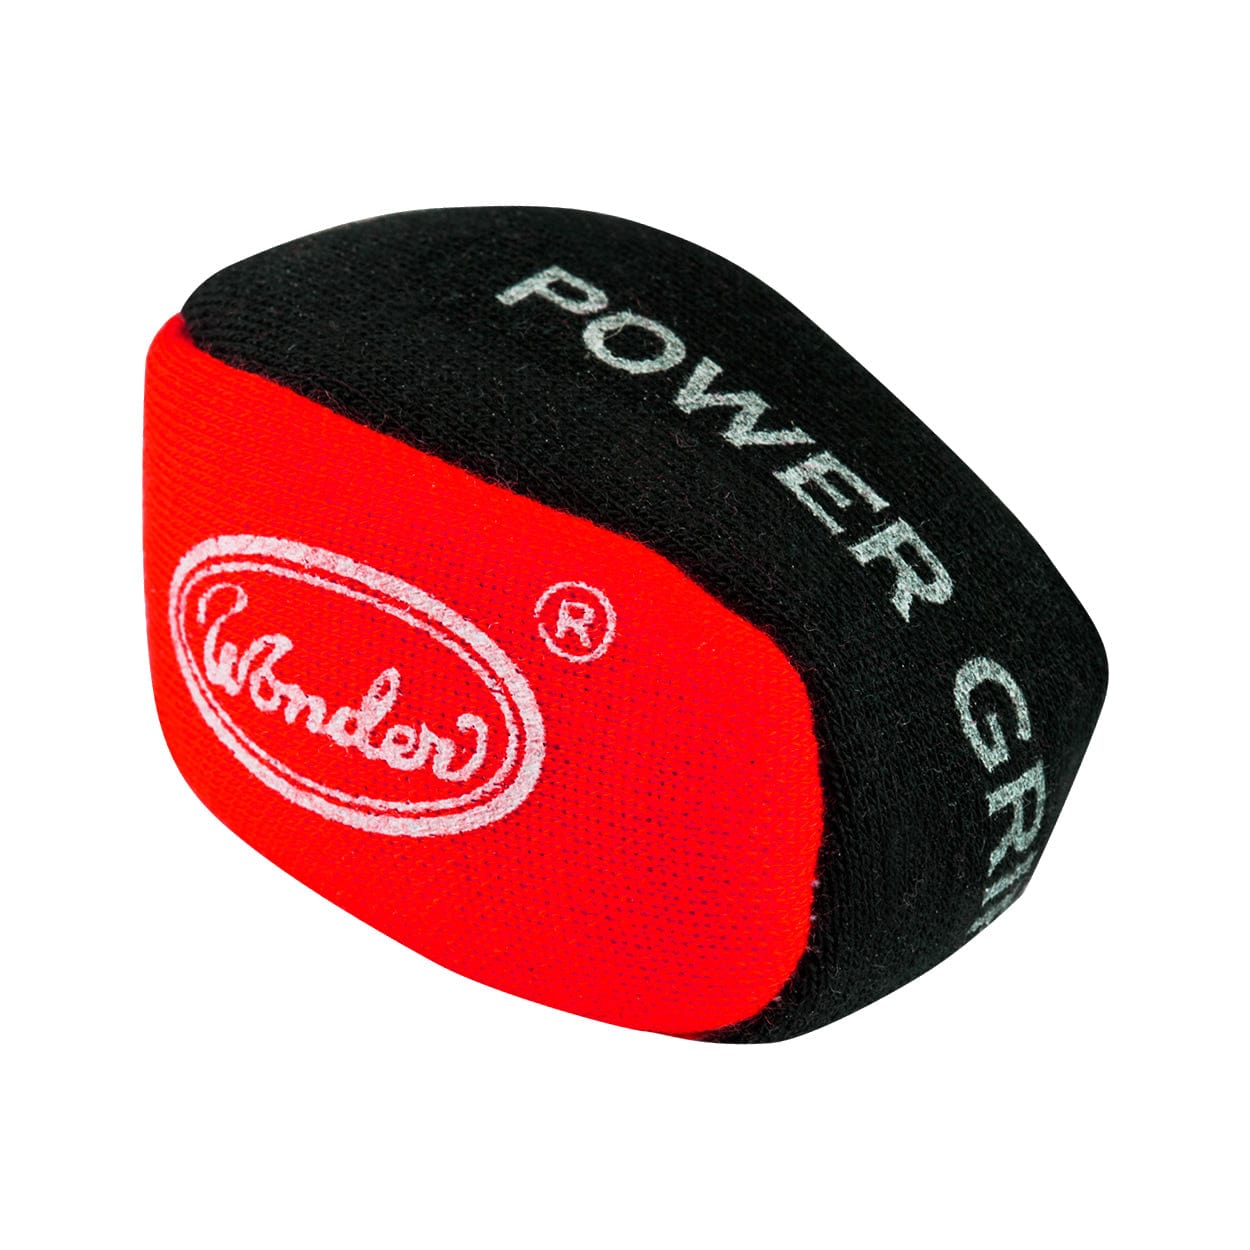 Designa Power Grip Ball - For Better Grip Dart Control - Absorbs Moisture Red